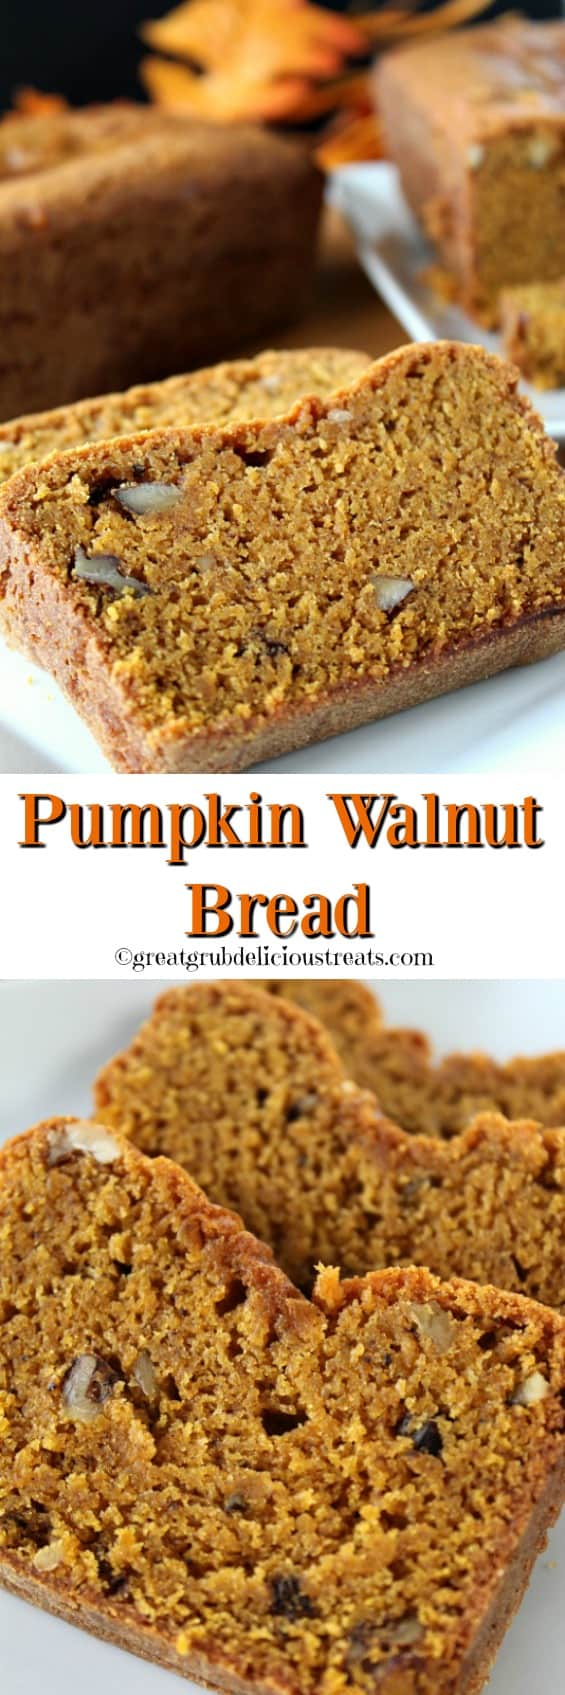 Pumpkin Walnut Bread